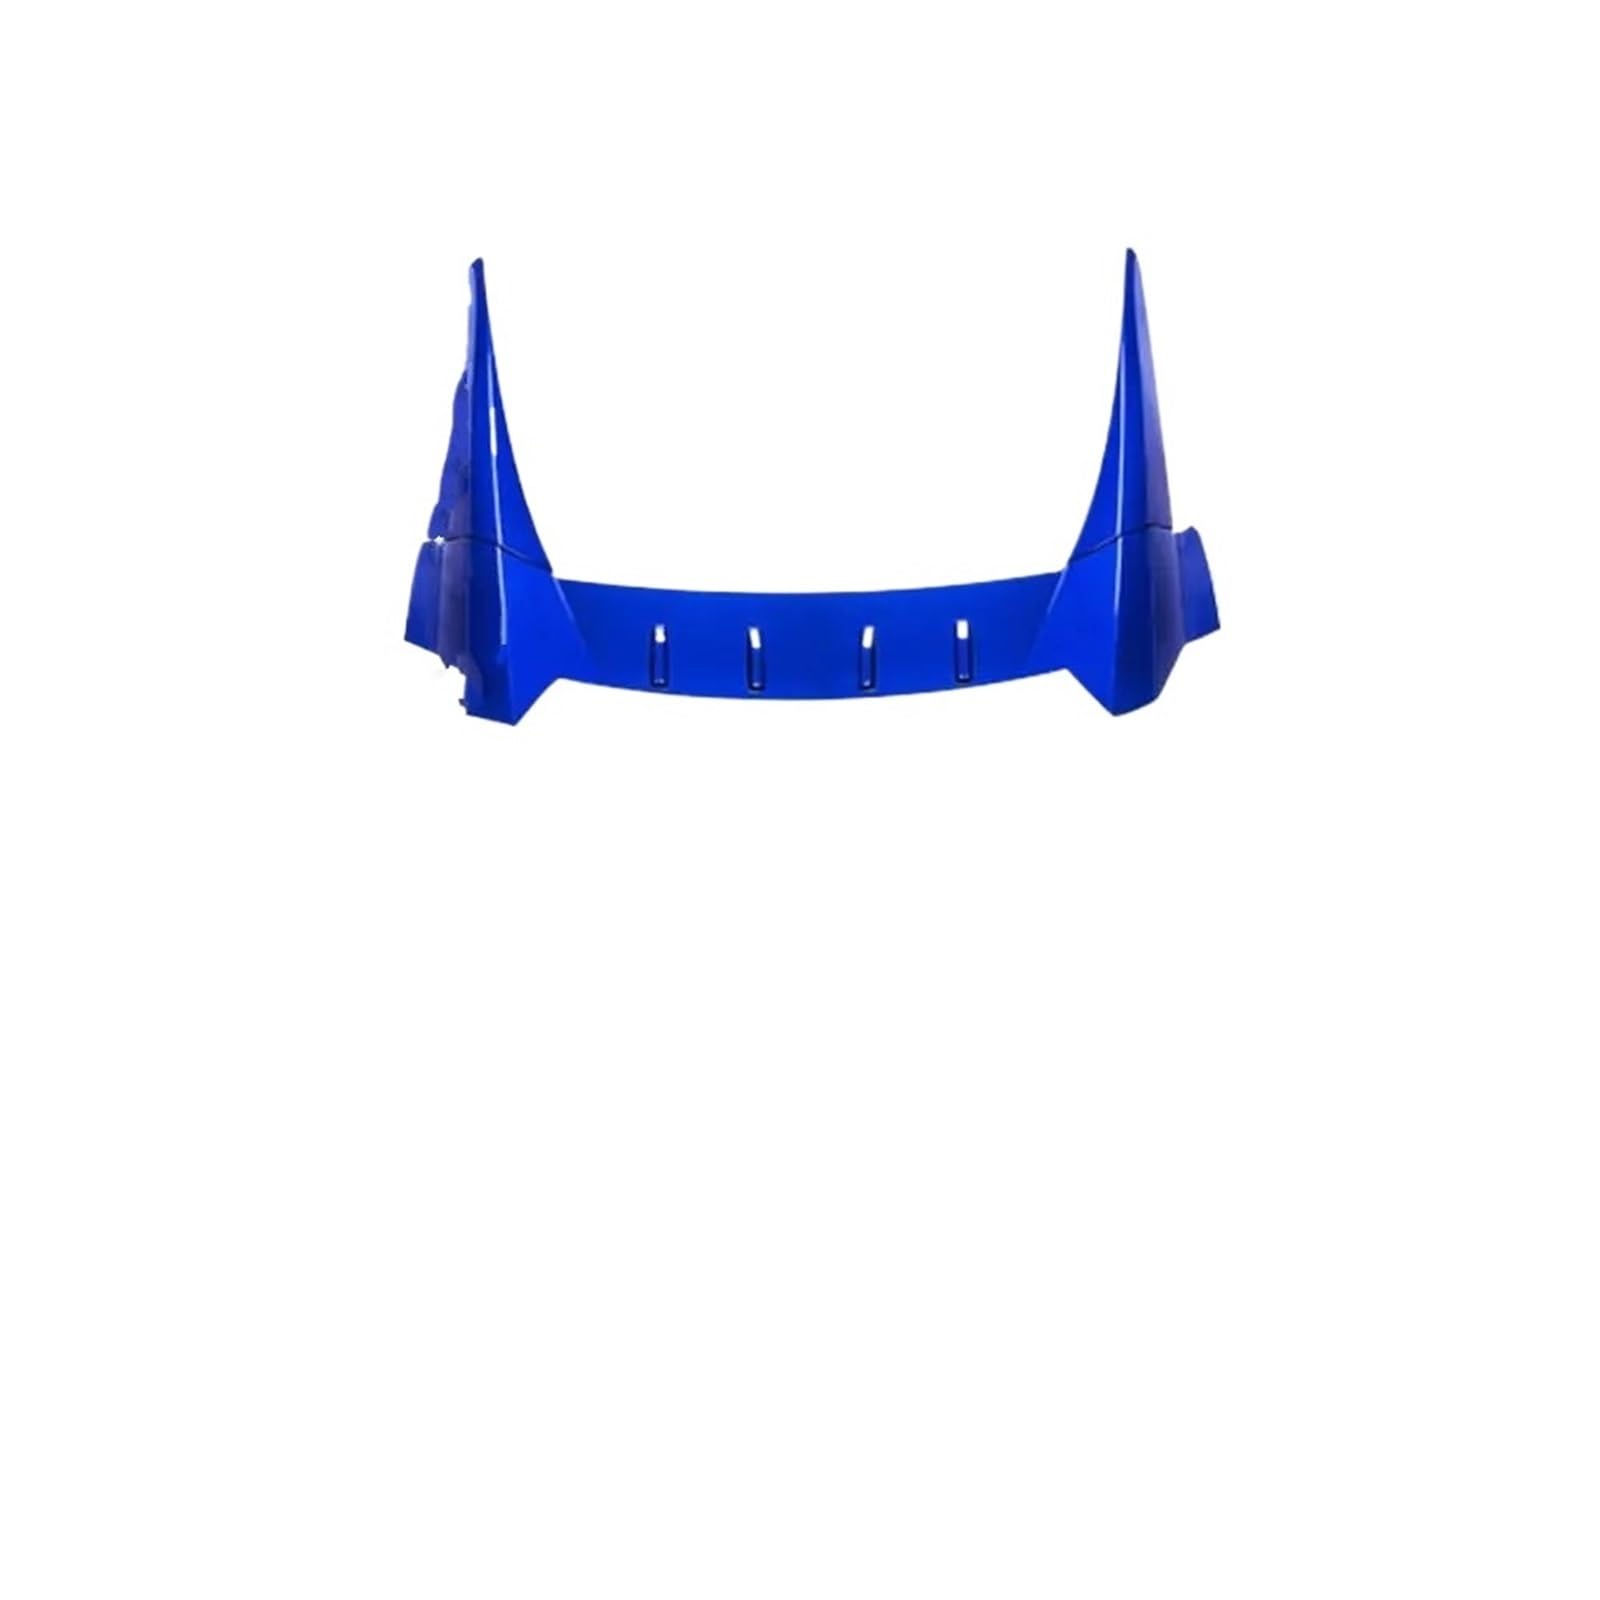 Auto Heckflügel Für Civic 2016 2017 2018 2019 2020 Dach Heckspoiler Flügel Carbon Fiber Trim Änderung Splitter Diffusor Körper Kit Refit Auto Spoiler Wing(Glossy Blue) von ZCera